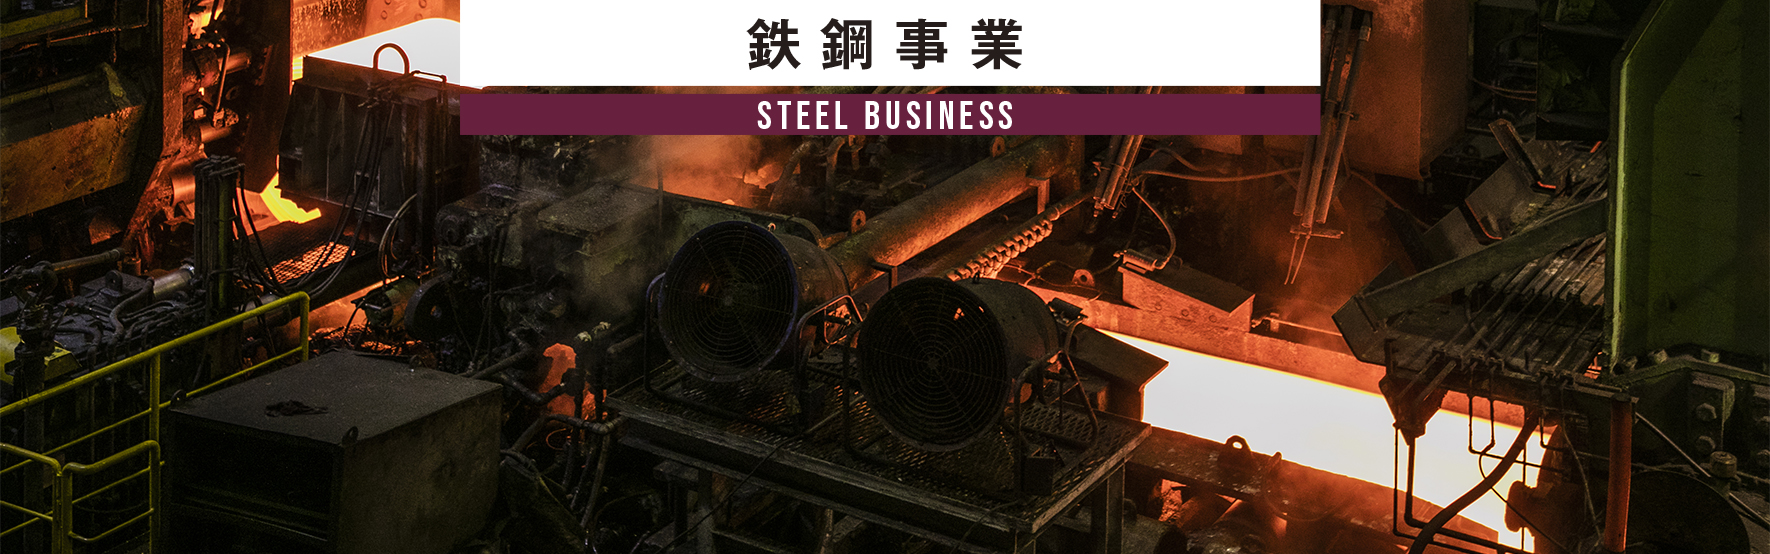 鉄鋼事業 STEEL BUSINESS